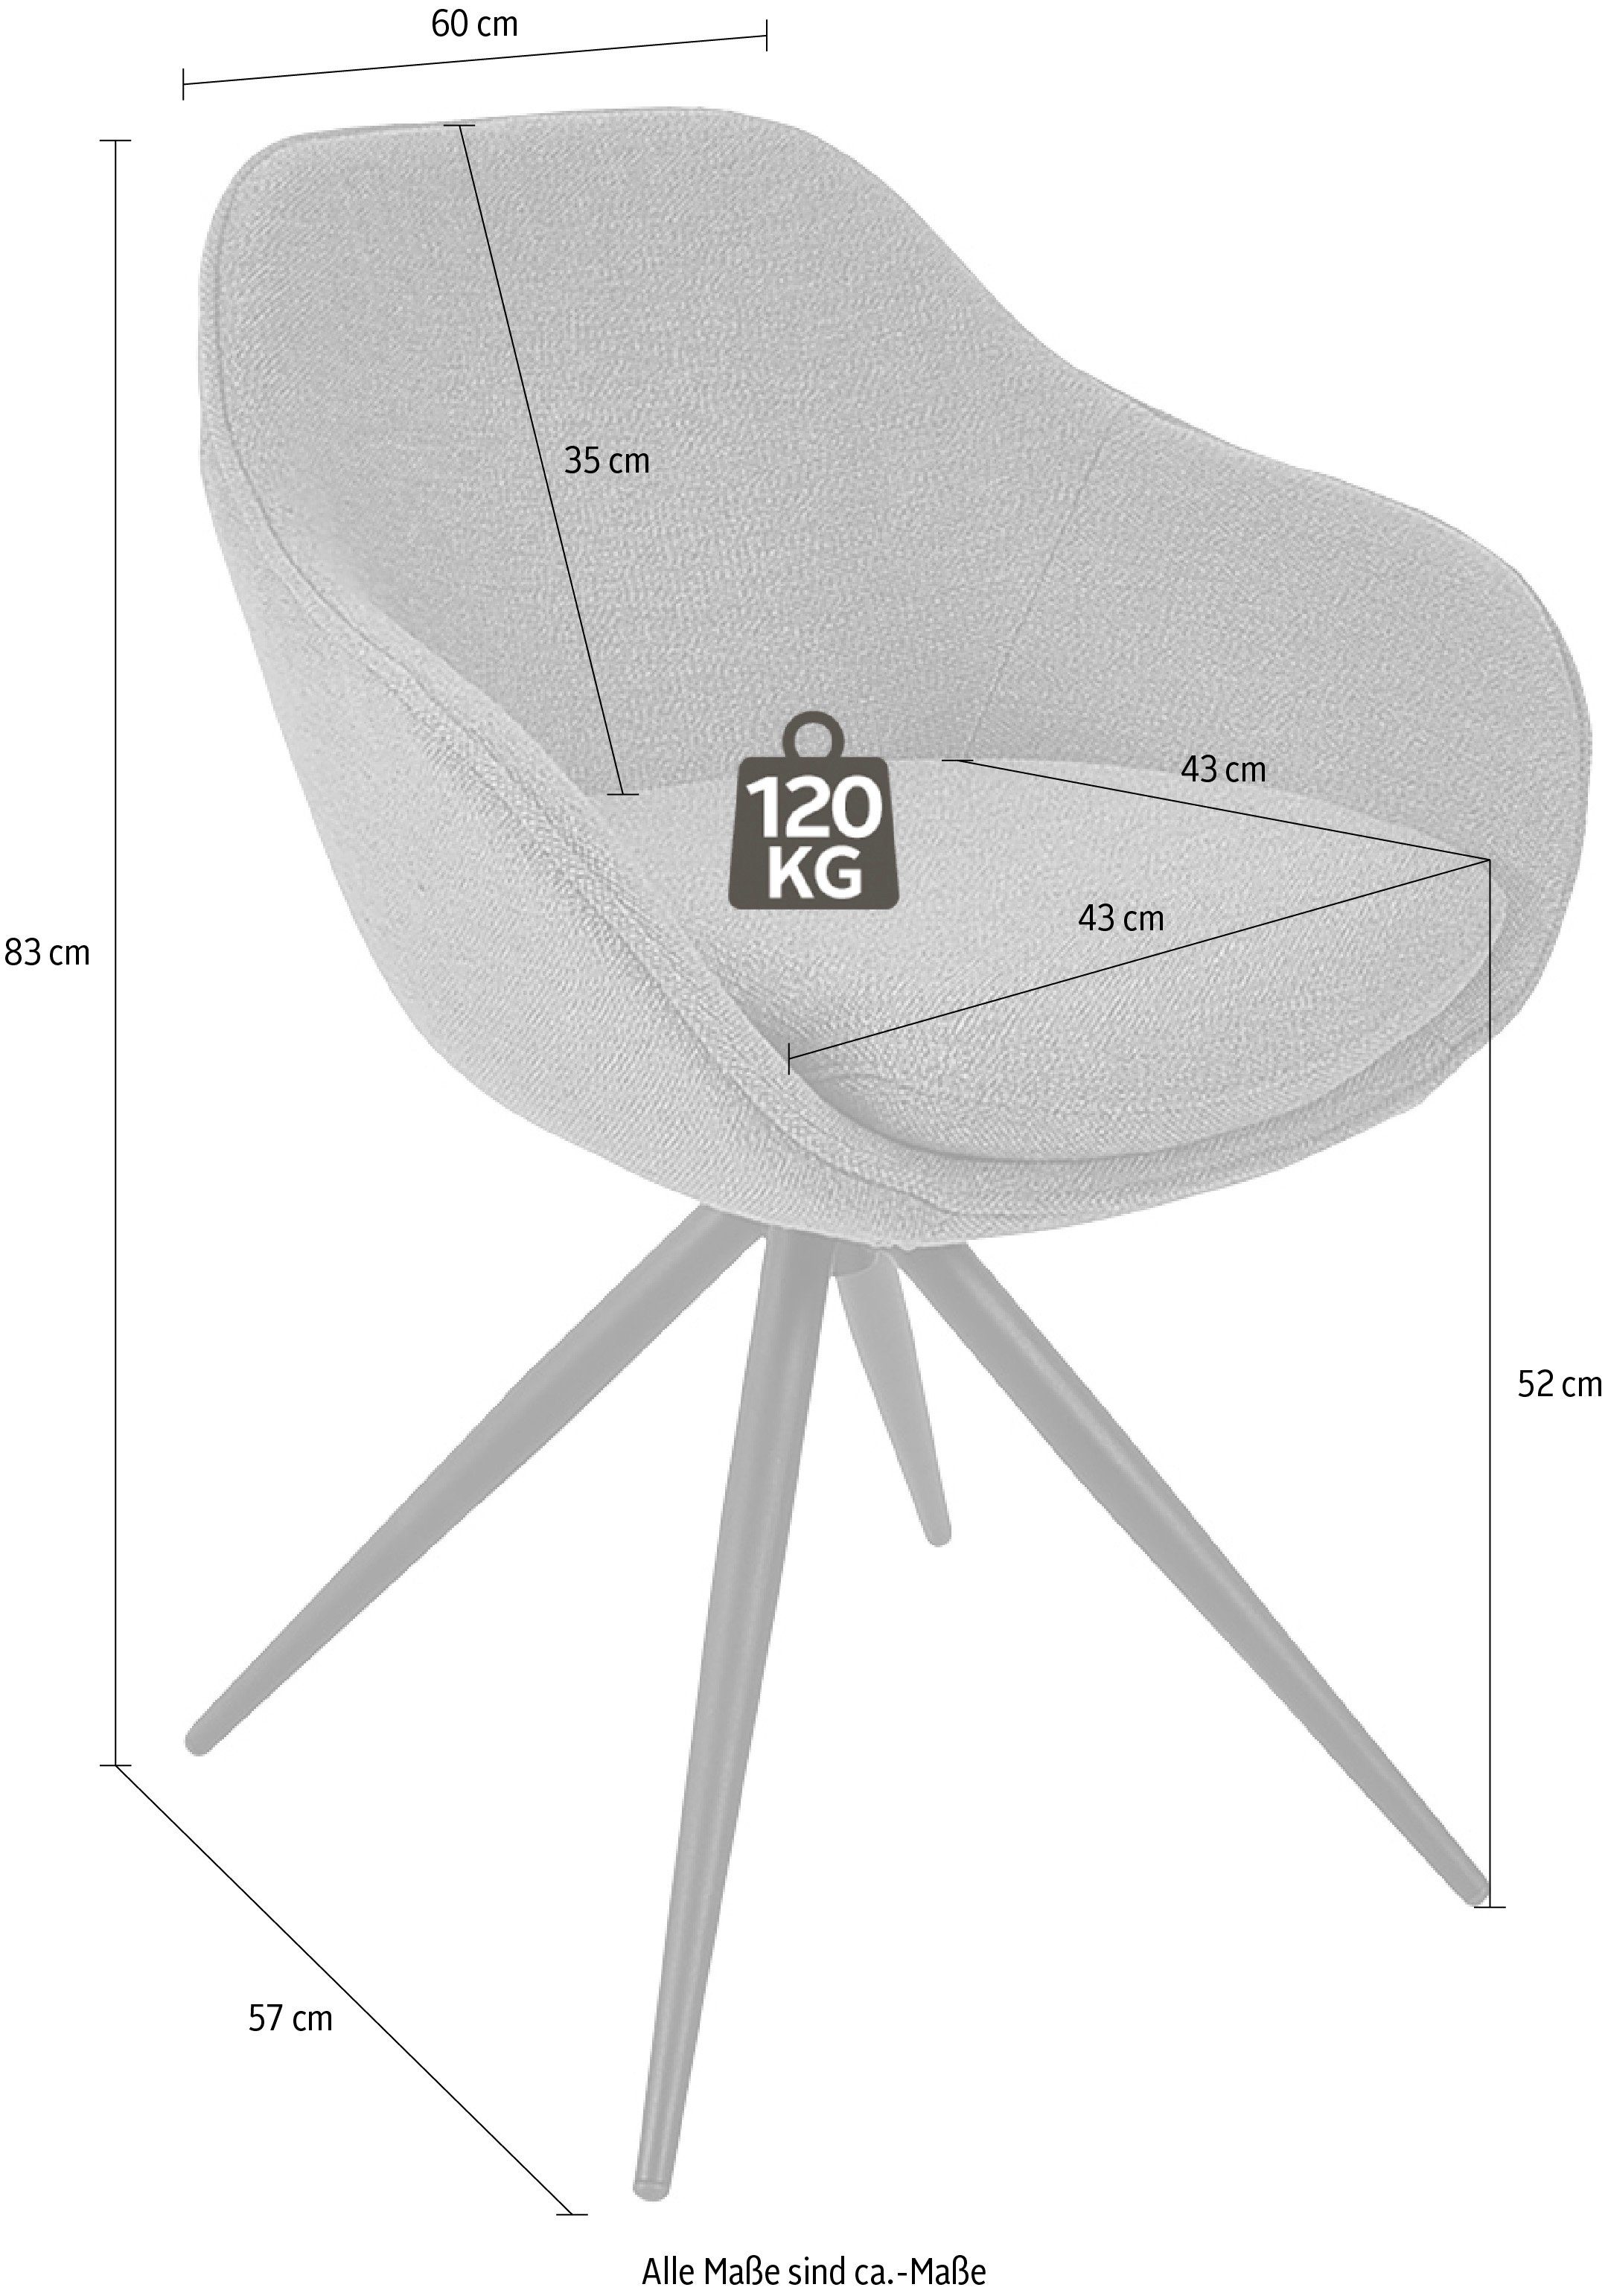 K+W Drehstuhl & mit Komfort schwarz ZOOM, Wohnen aus Metall Struktur Gestell Drehstuhl 4-Fuß